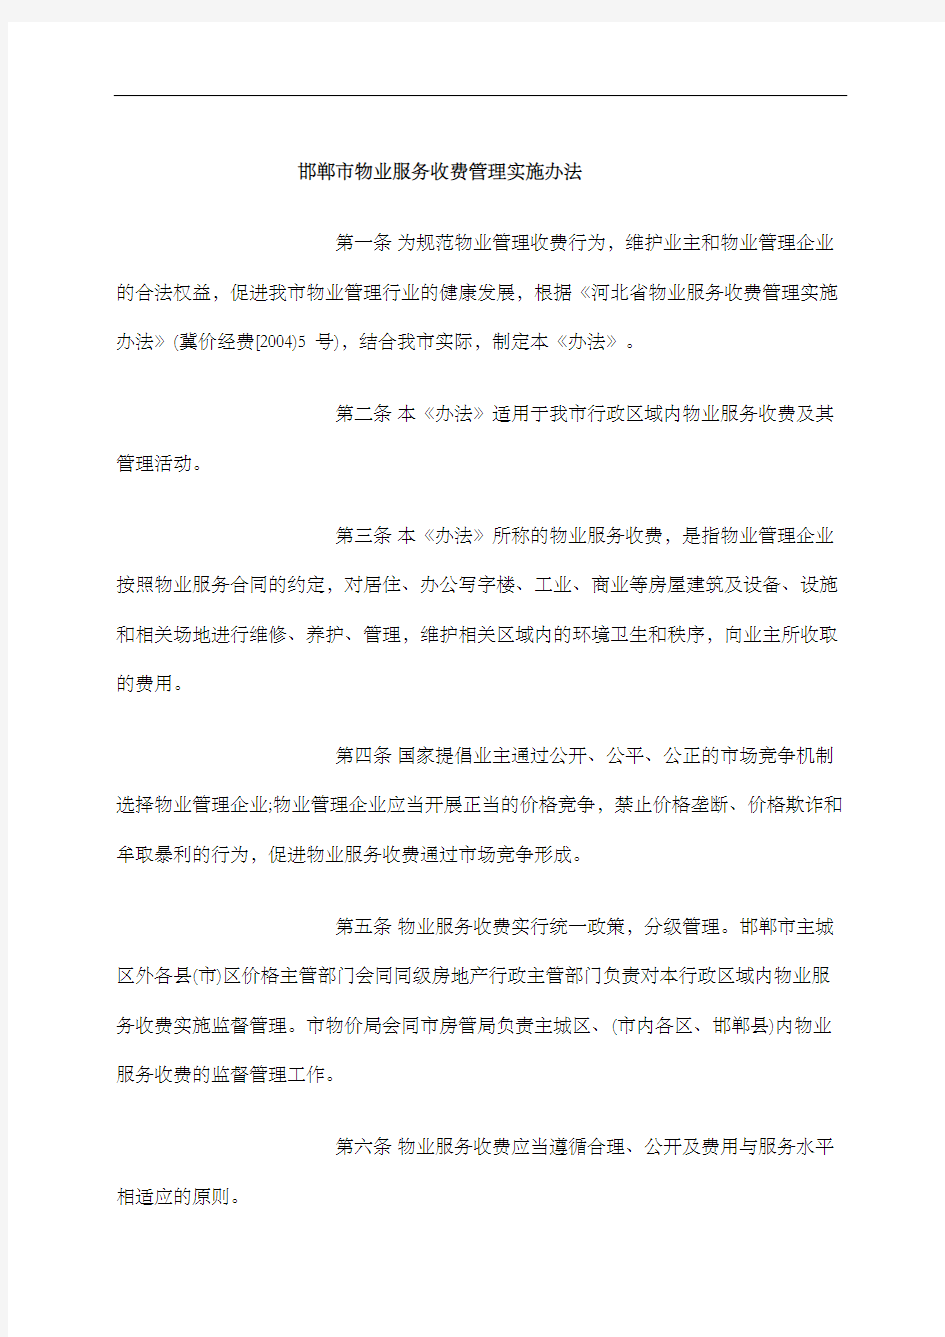 邯郸市物业服务收费管理实施办法修订版